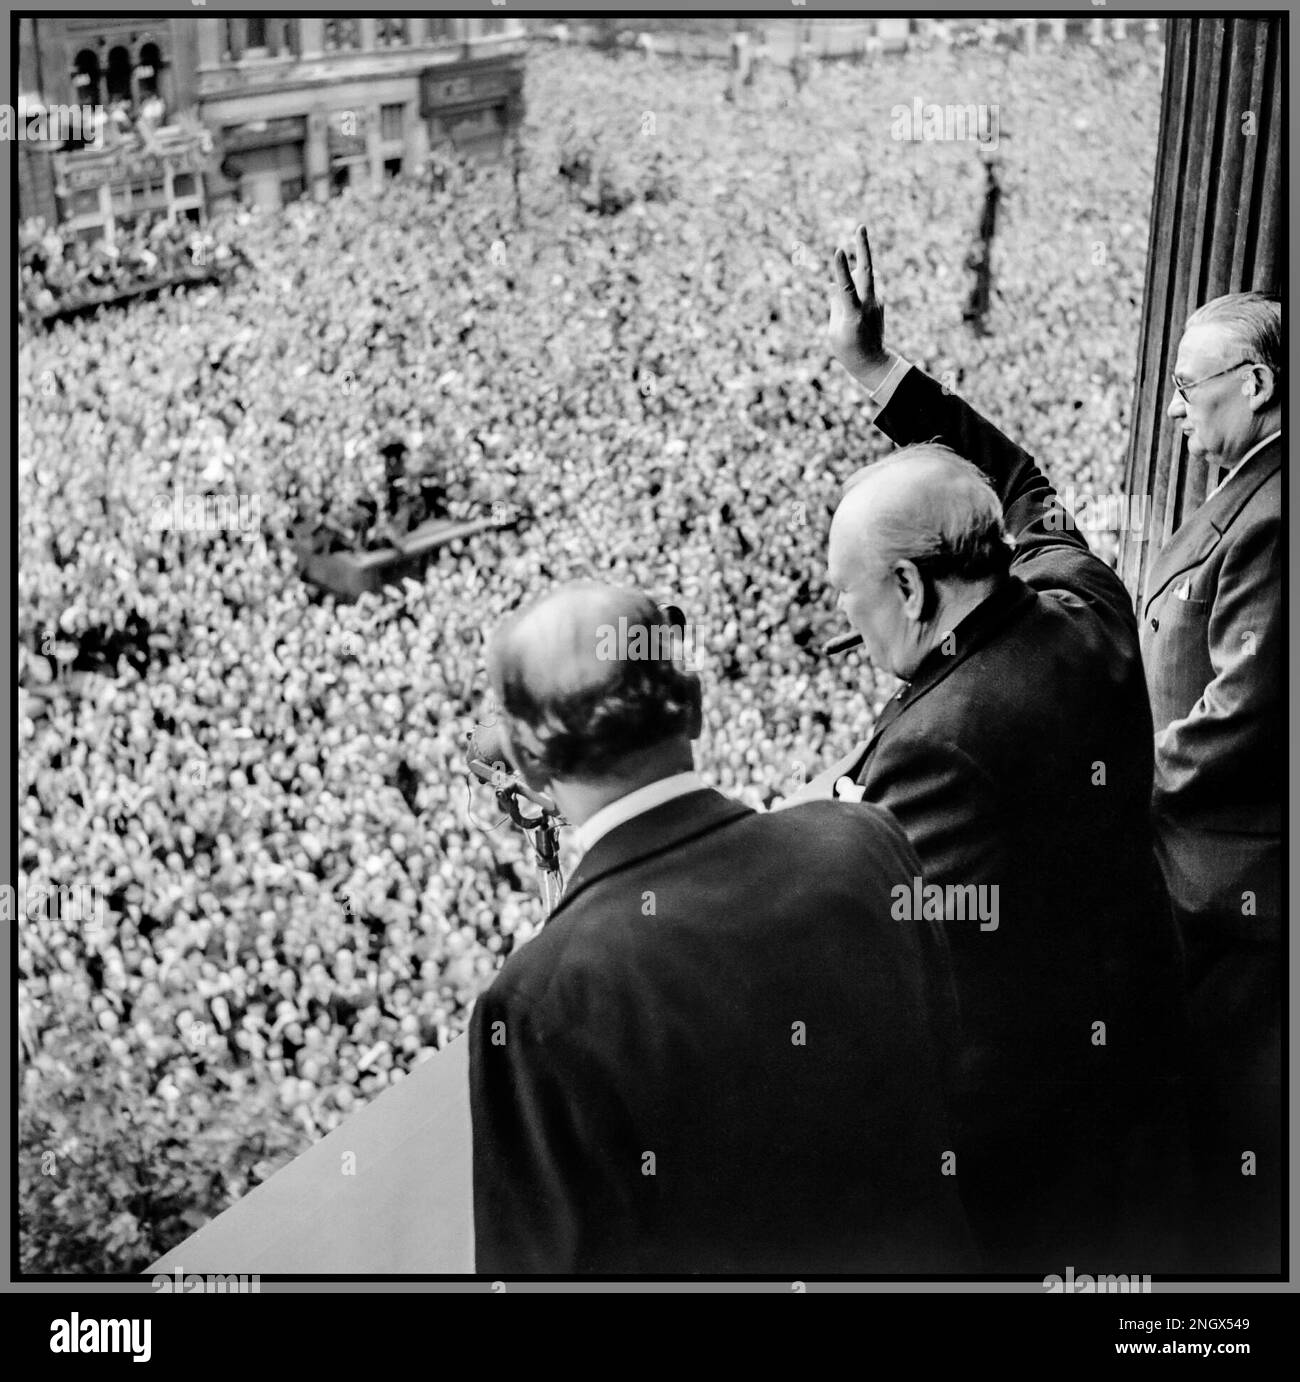 VE DAY WW2 (Sir) Winston Churchill winkt zu den ekstatischen Massen in Whitehall London, während sie VE Day, 8. Mai 1945, feiern. "Sieg in Europa" vom Londoner Balkon des Gesundheitsministeriums gibt Premierminister Winston Churchill mit seiner Markenzeichen Zigarre sein berühmtes "V for Victory" -Zeichen an massenhafte Menschenmassen in Whitehall am selben Tag, an dem er der britischen Nation übertrug, dass der Krieg mit Nazi-Deutschland gewonnen wurde, 8. Mai 1945 (VE Day). Zu Churchills Linken ist Sir John Anderson, der Schatzkanzler. Zu Churchills Rechten gehört Ernest Bevin, der Arbeitsminister. 8. Mai 1945 Stockfoto